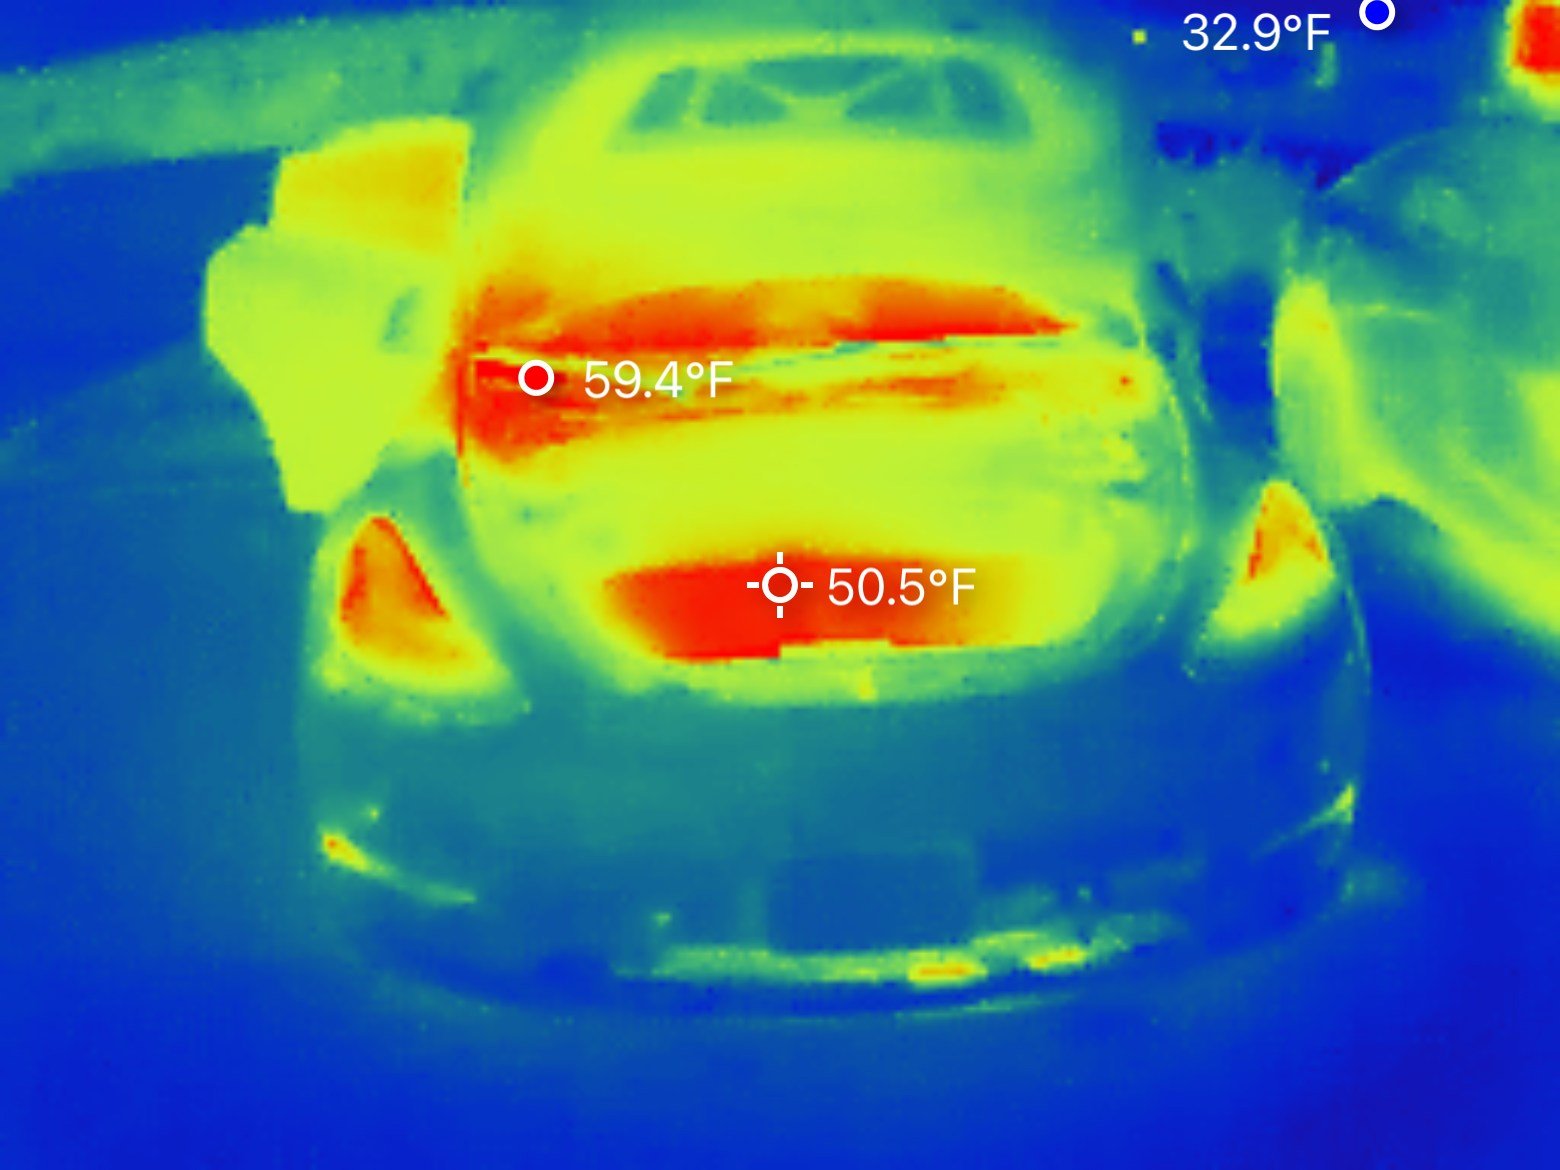 Model Y Frunk thermal image